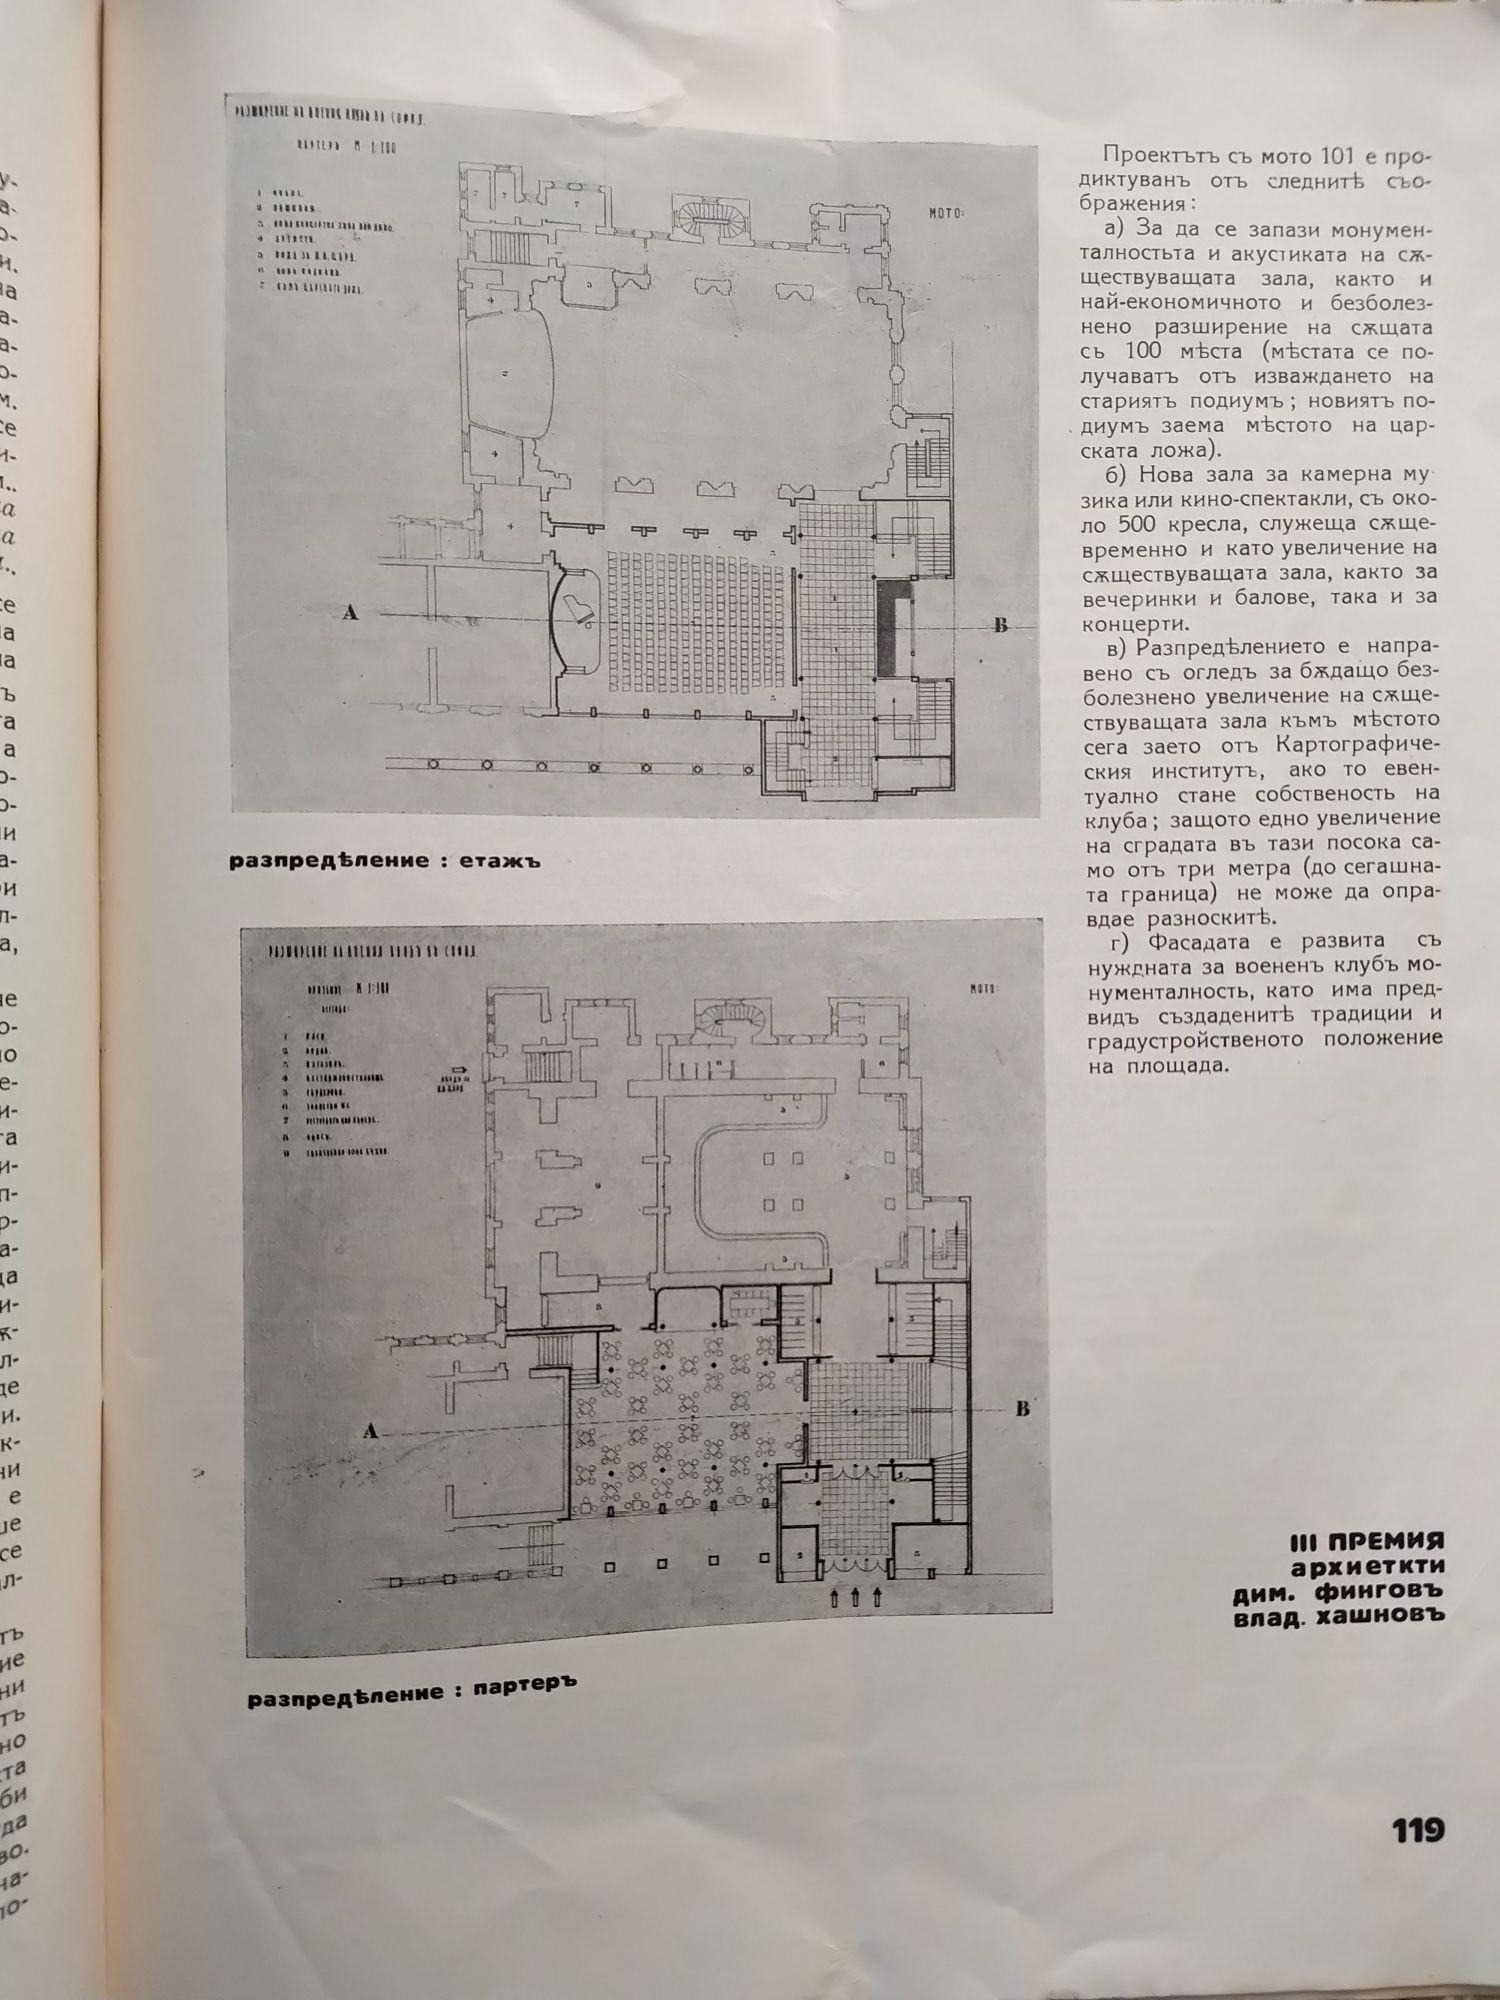 Списание АРХИТЕКТЪ,орган на дружеството на българските архитекти 1934